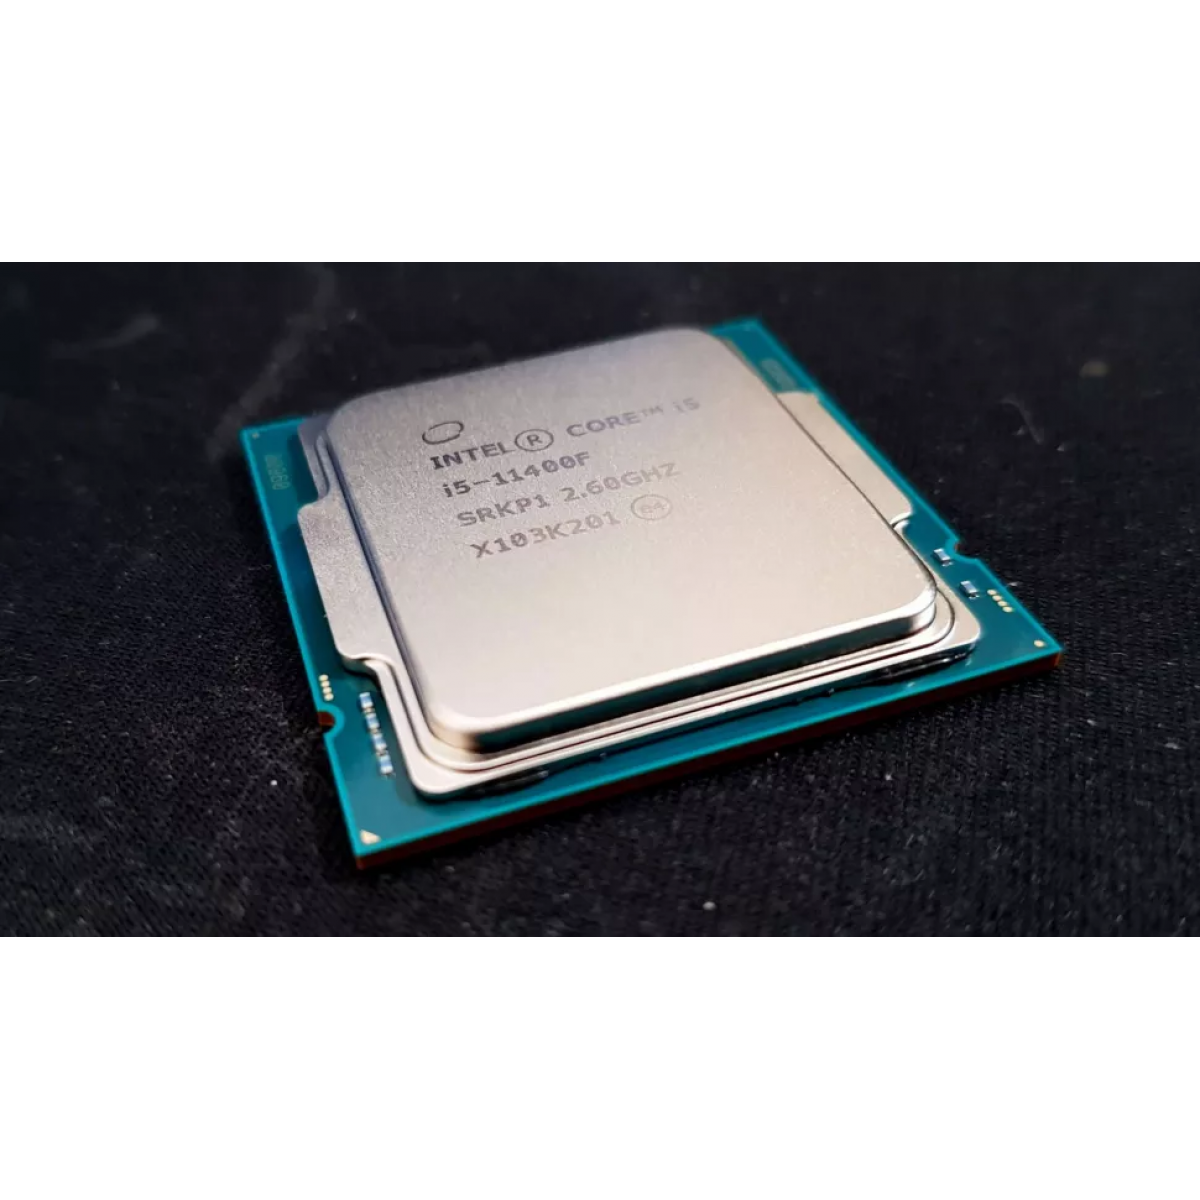 CPU Intel Core i5-11400F 2.6GHz turbo up to 4.4Ghz | 6 nhân 12 luồng | 12MB Cache, 65W